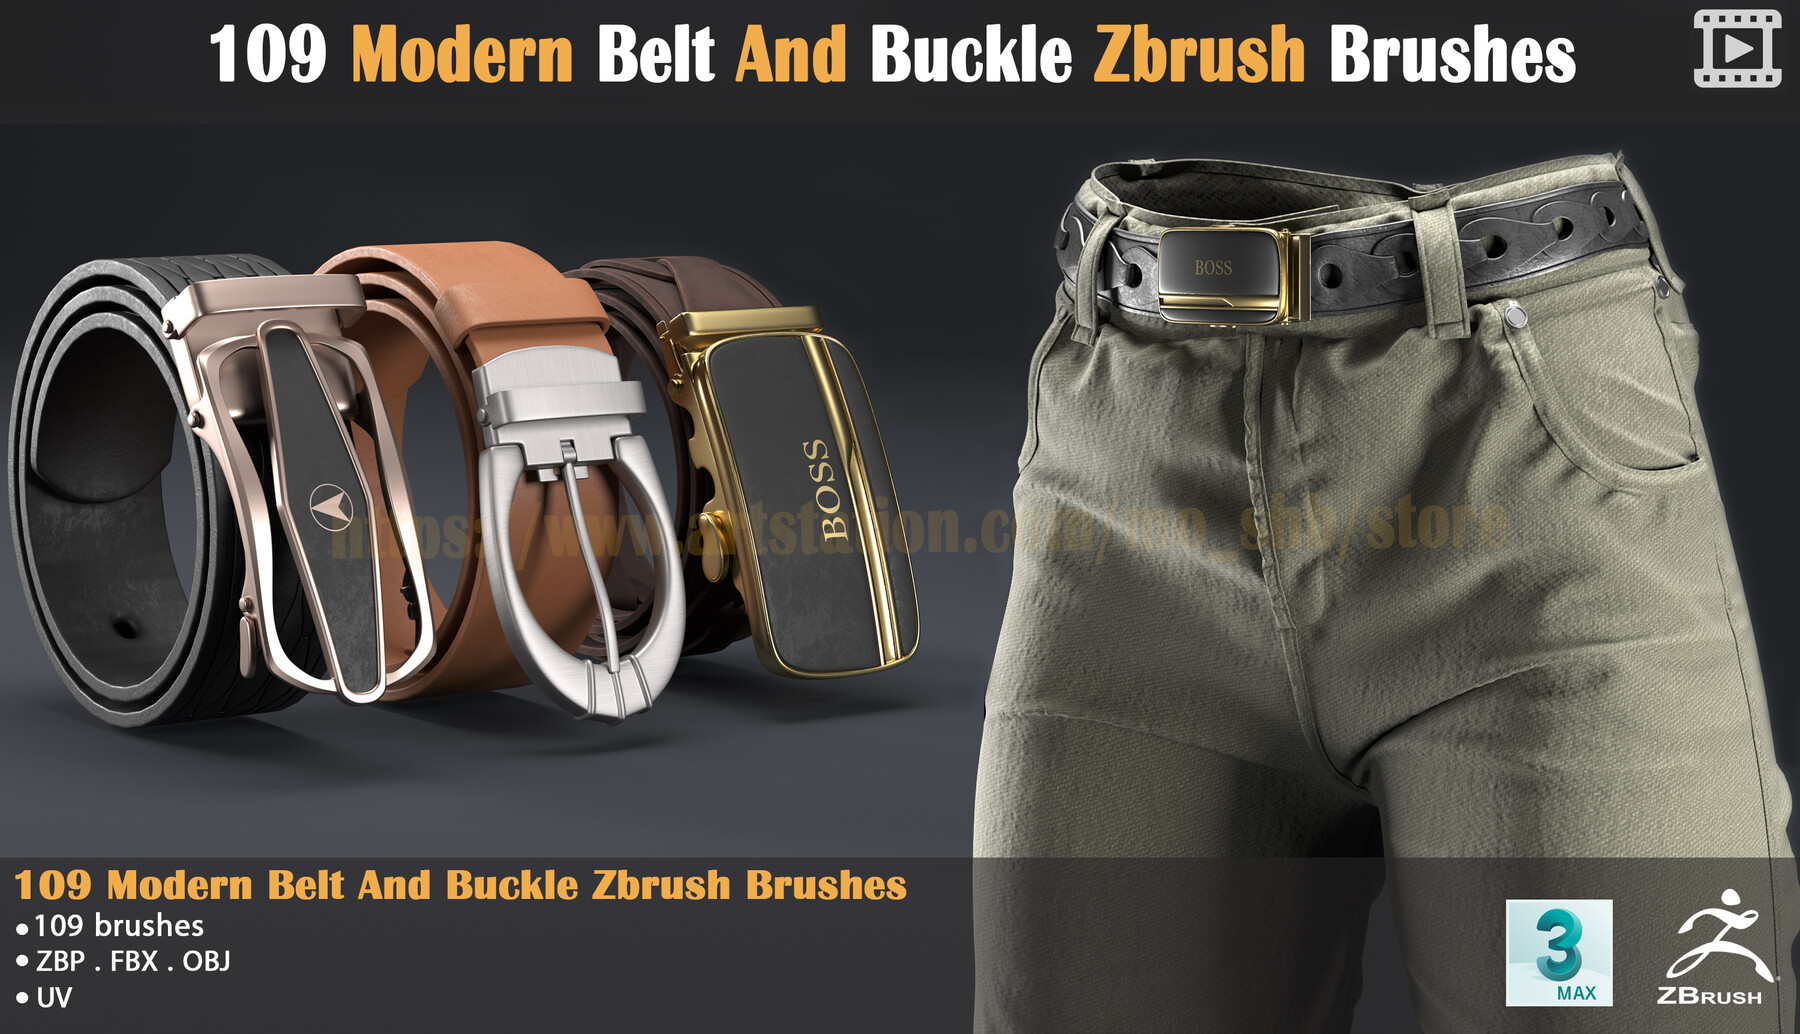 mohamad shalibaik - 109 Modern Belt And Buckle Zbrush Brushes